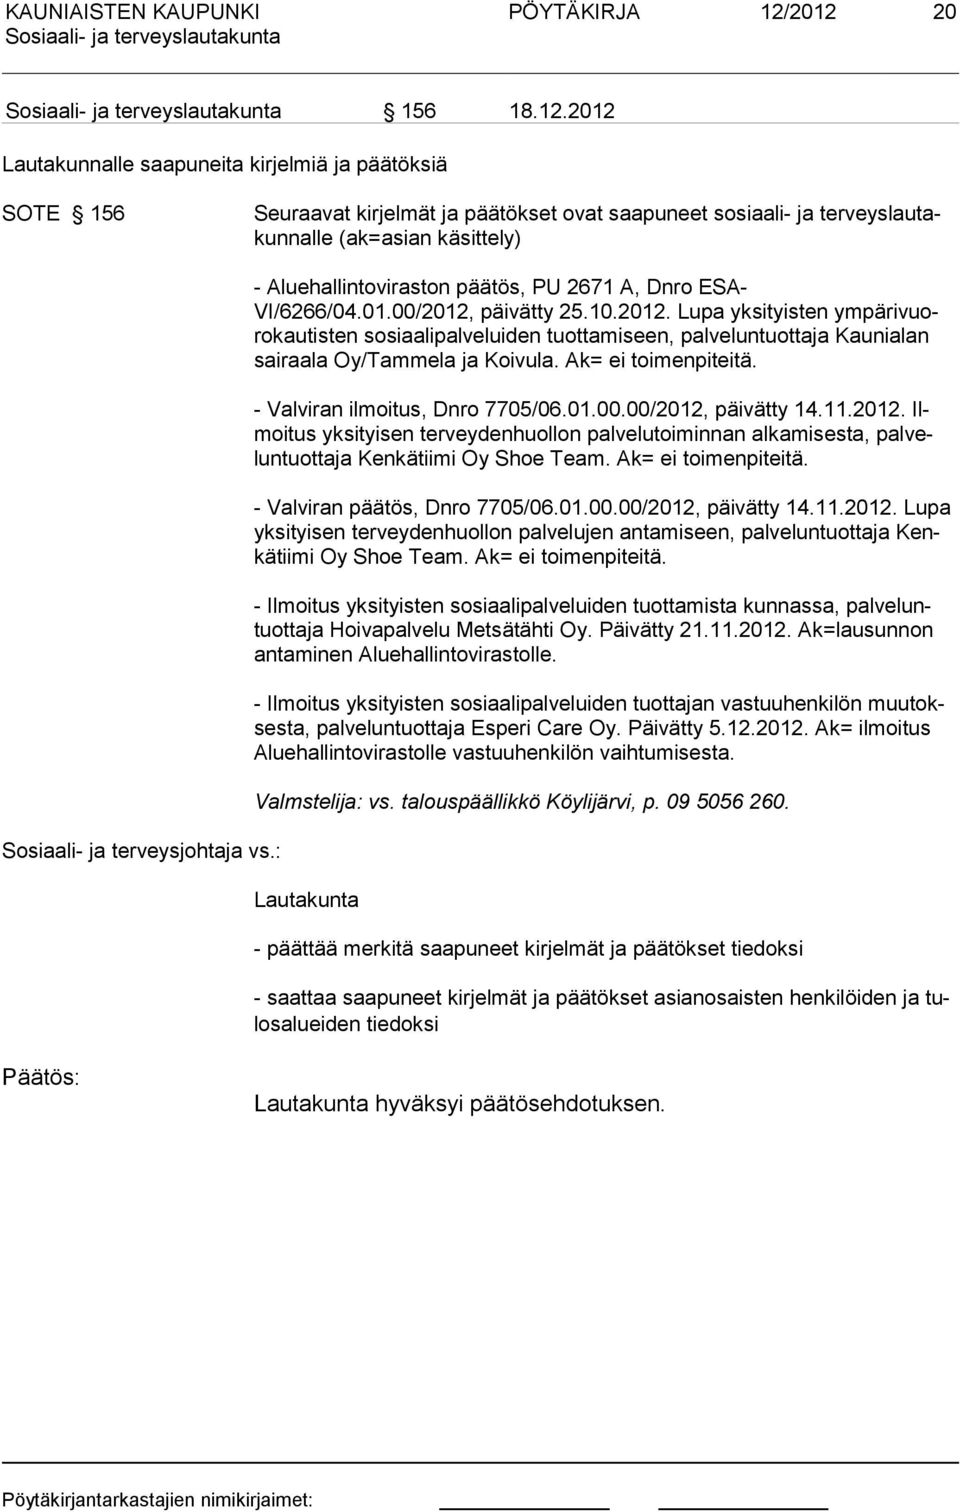 terveysjohtaja vs.: - Aluehallintoviraston päätös, PU 2671 A, Dnro ESA- VI/6266/04.01.00/2012,